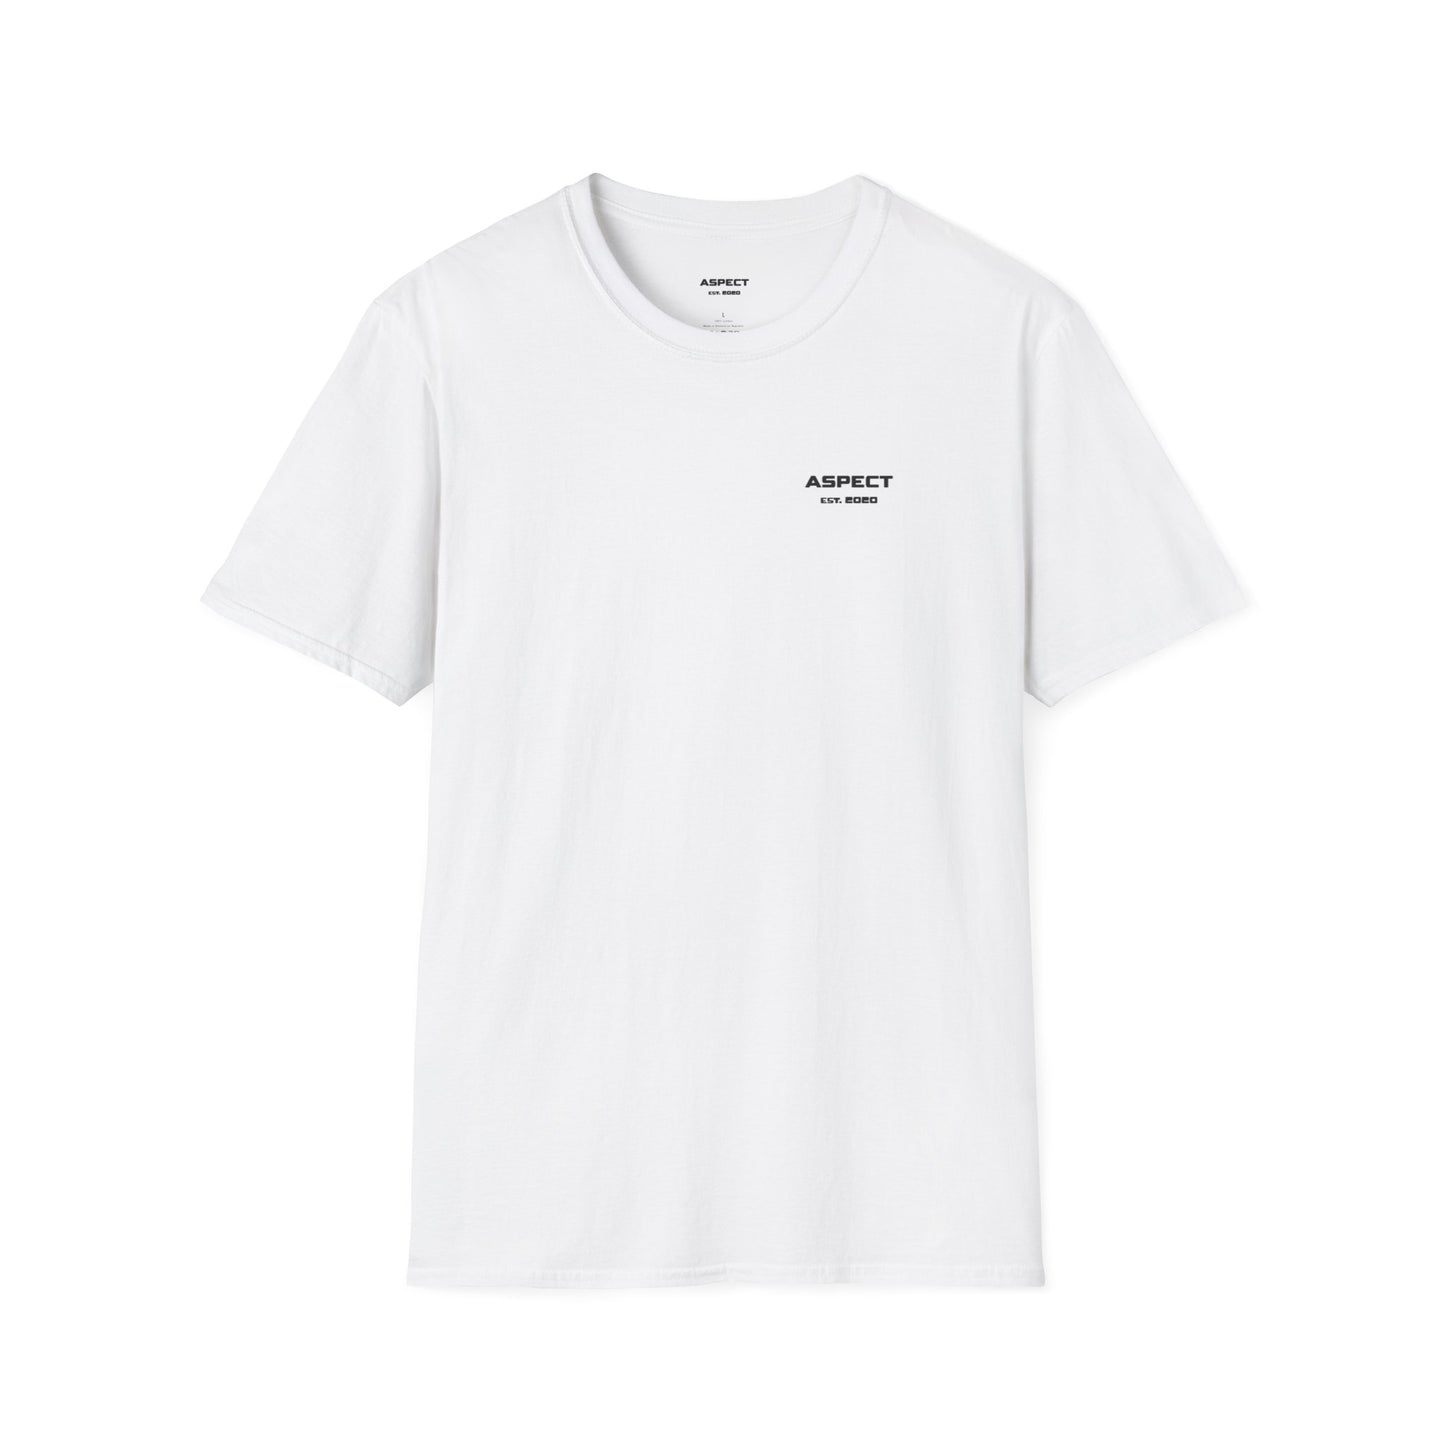 Ocean Blue Porsche White T-Shirt